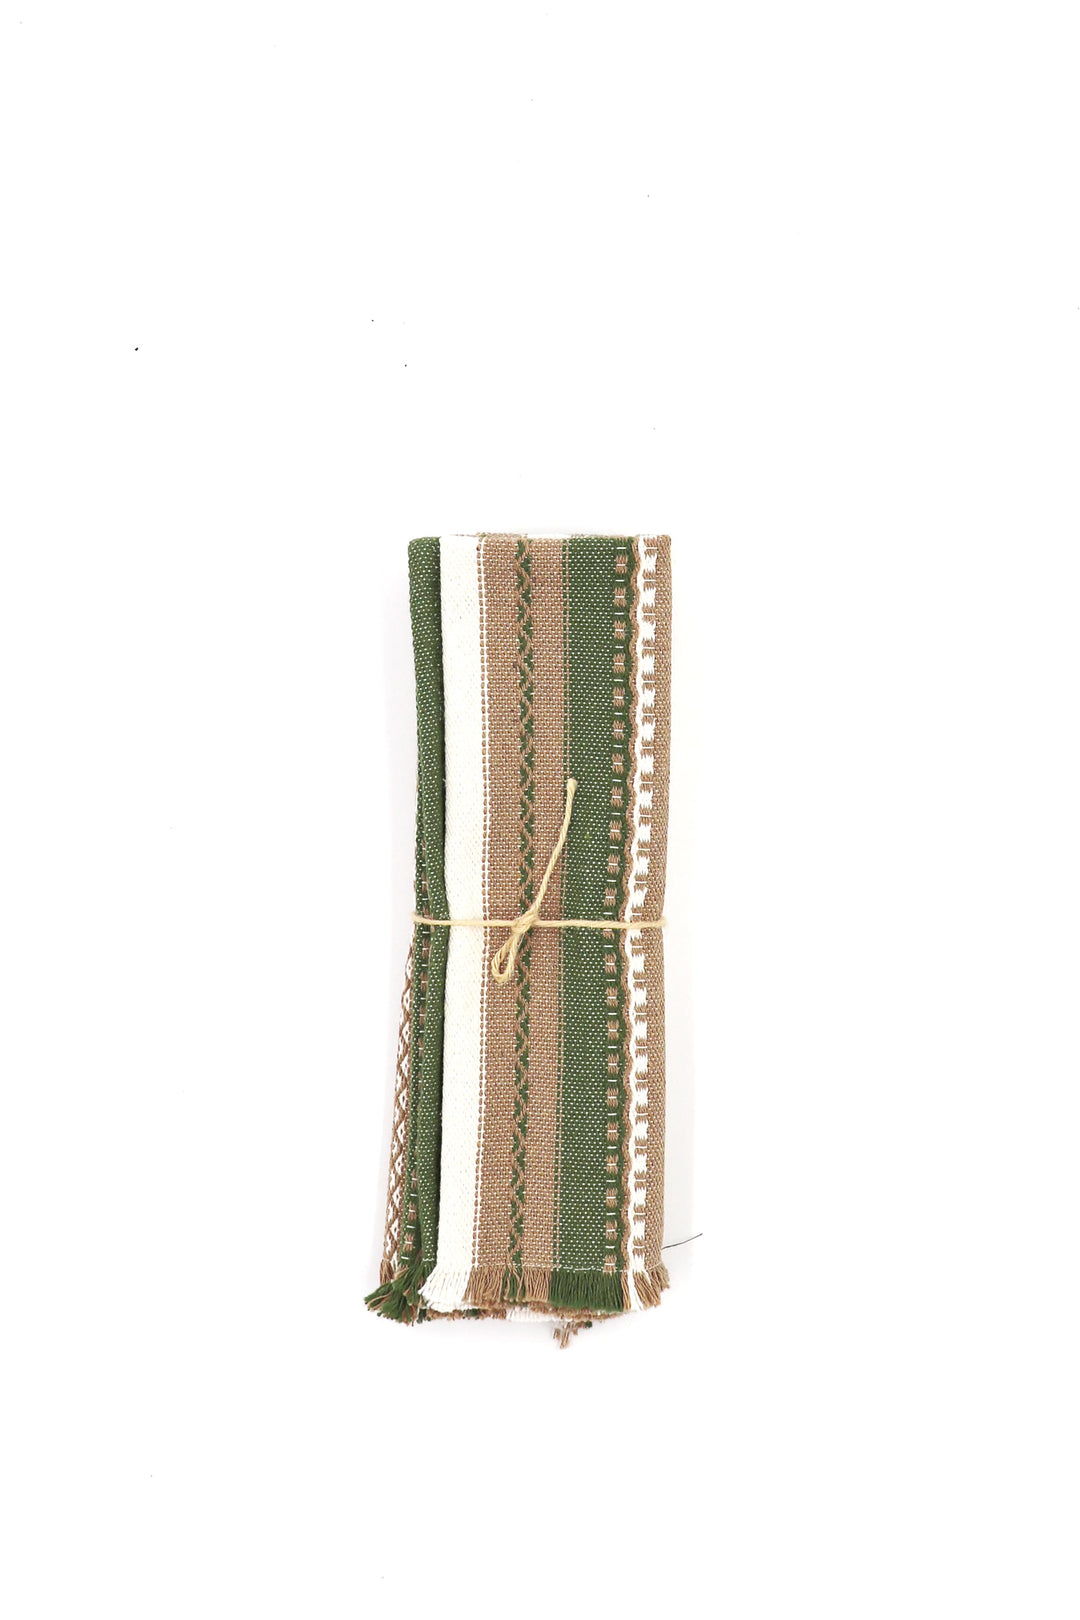 Mantel individual 2 uds. alpujarra crudo marrón y verde